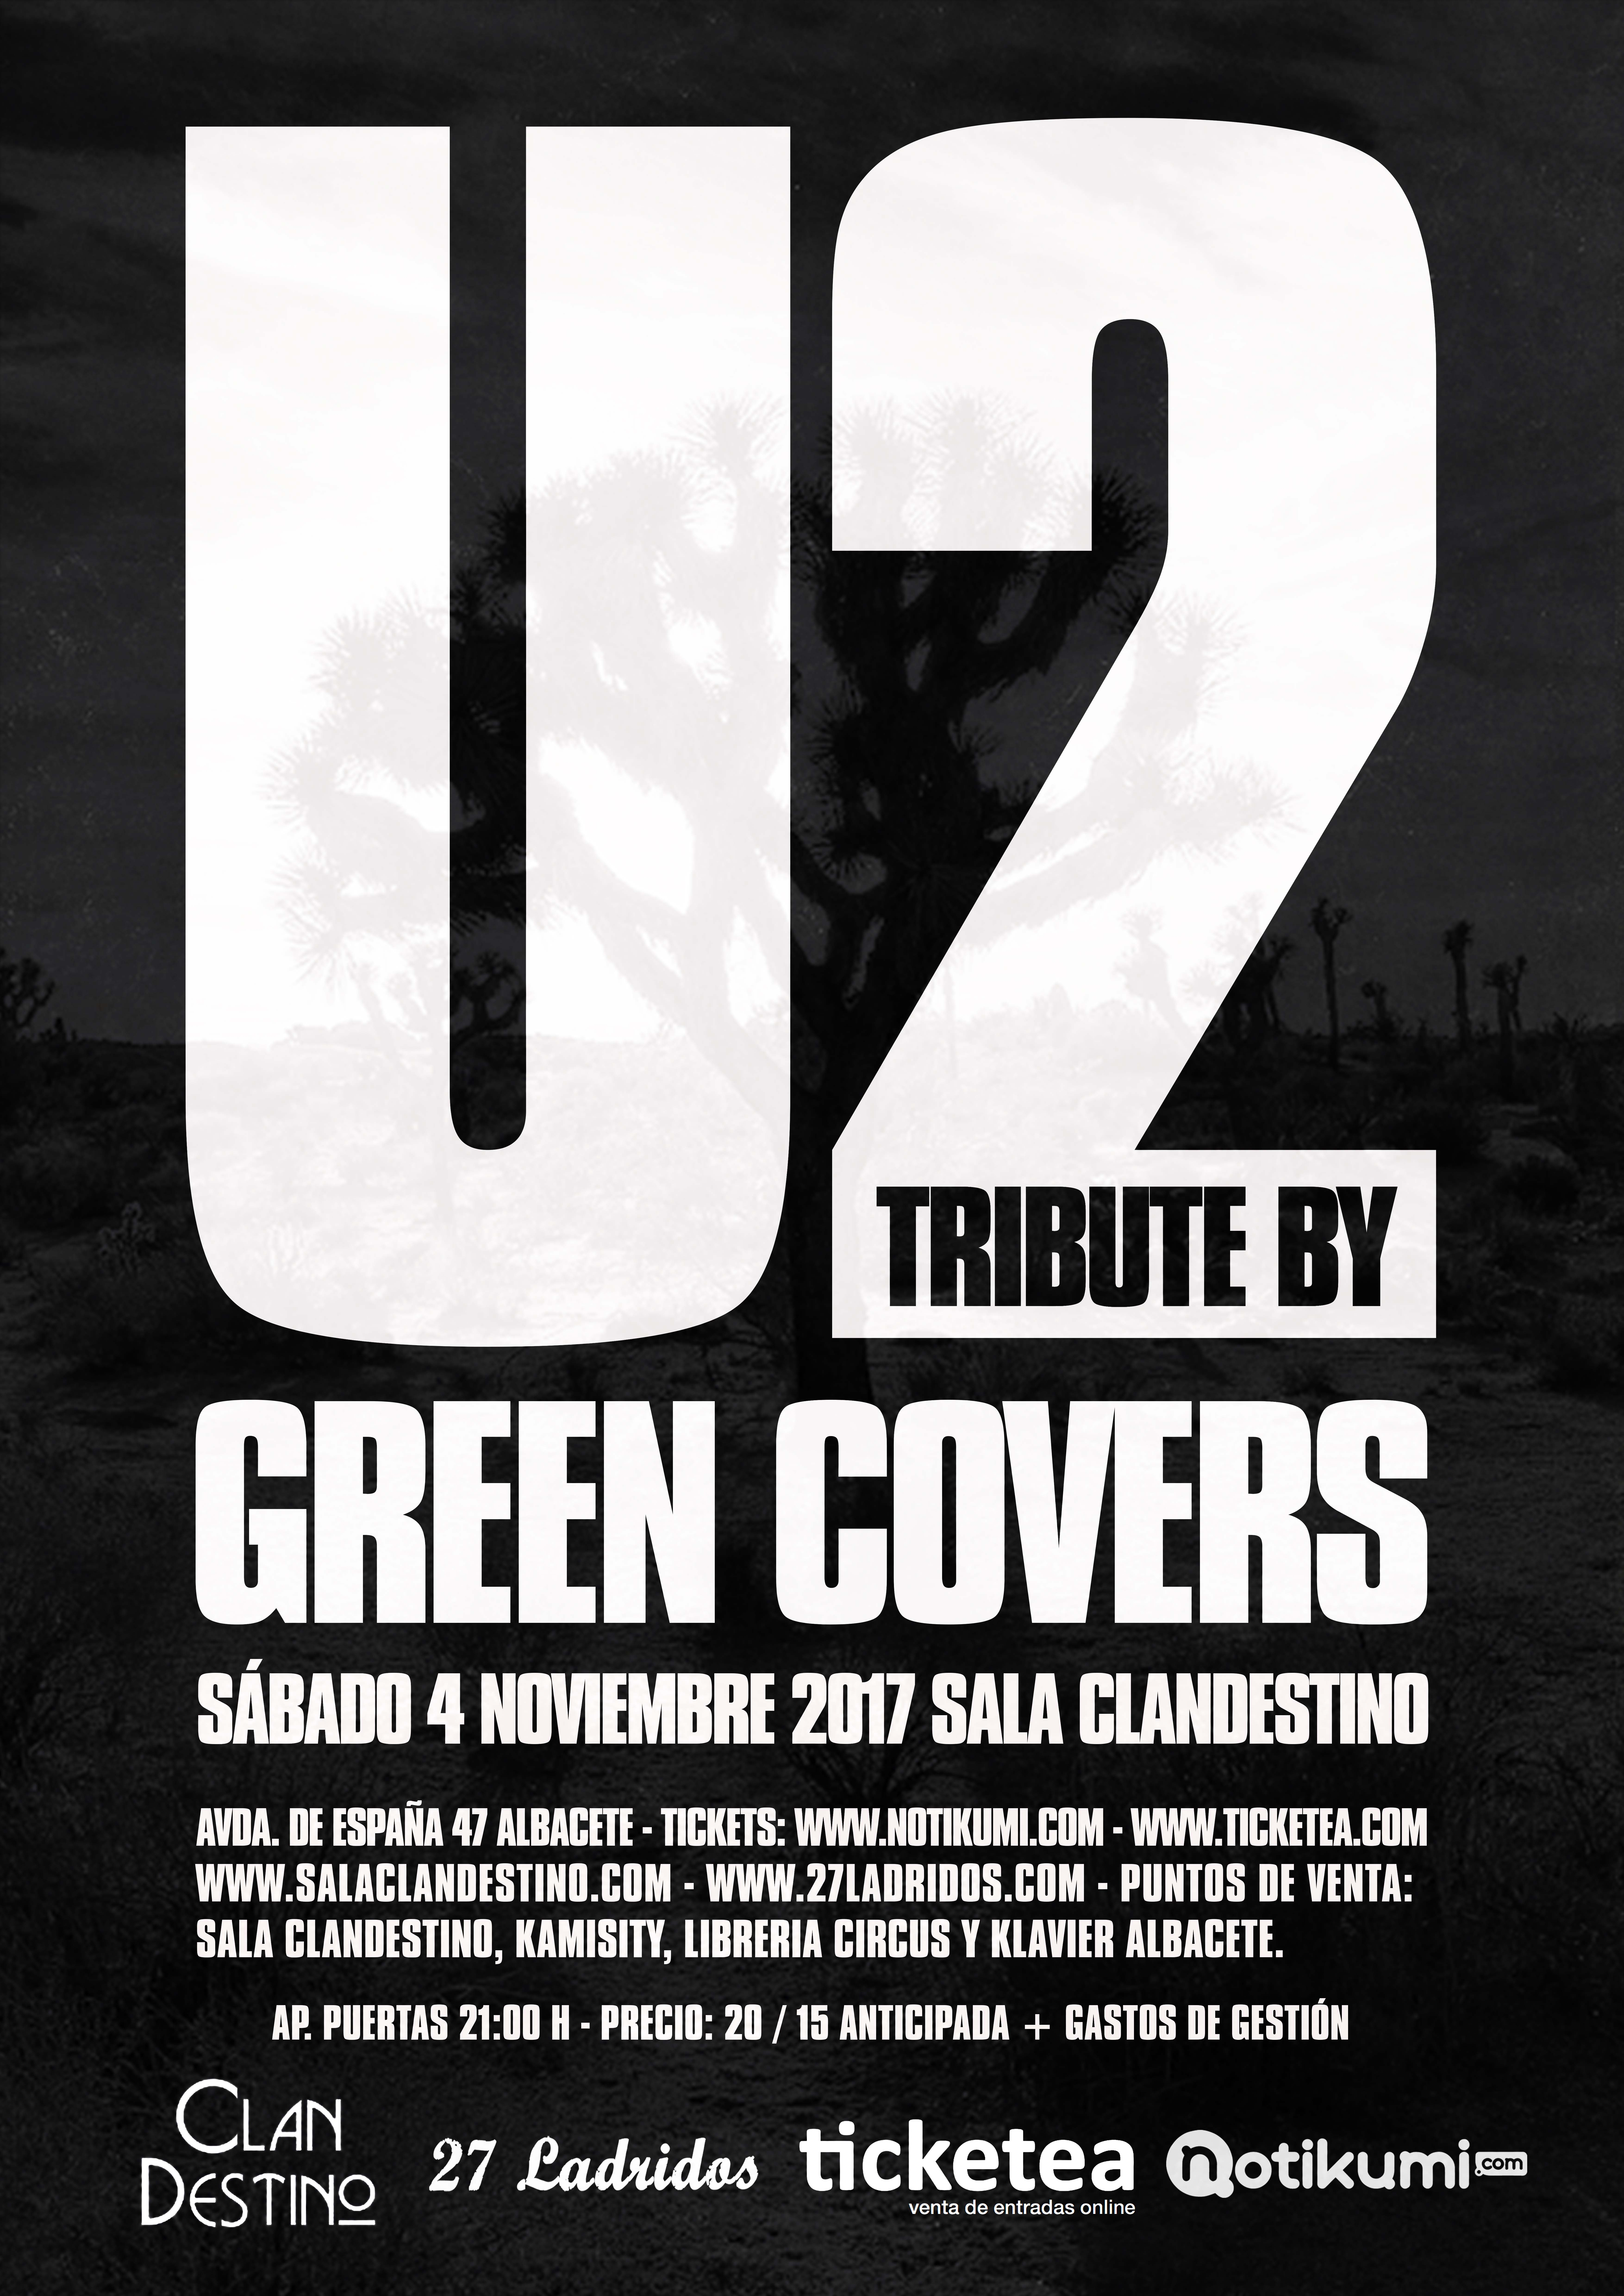 u2 tribute green covers albacete